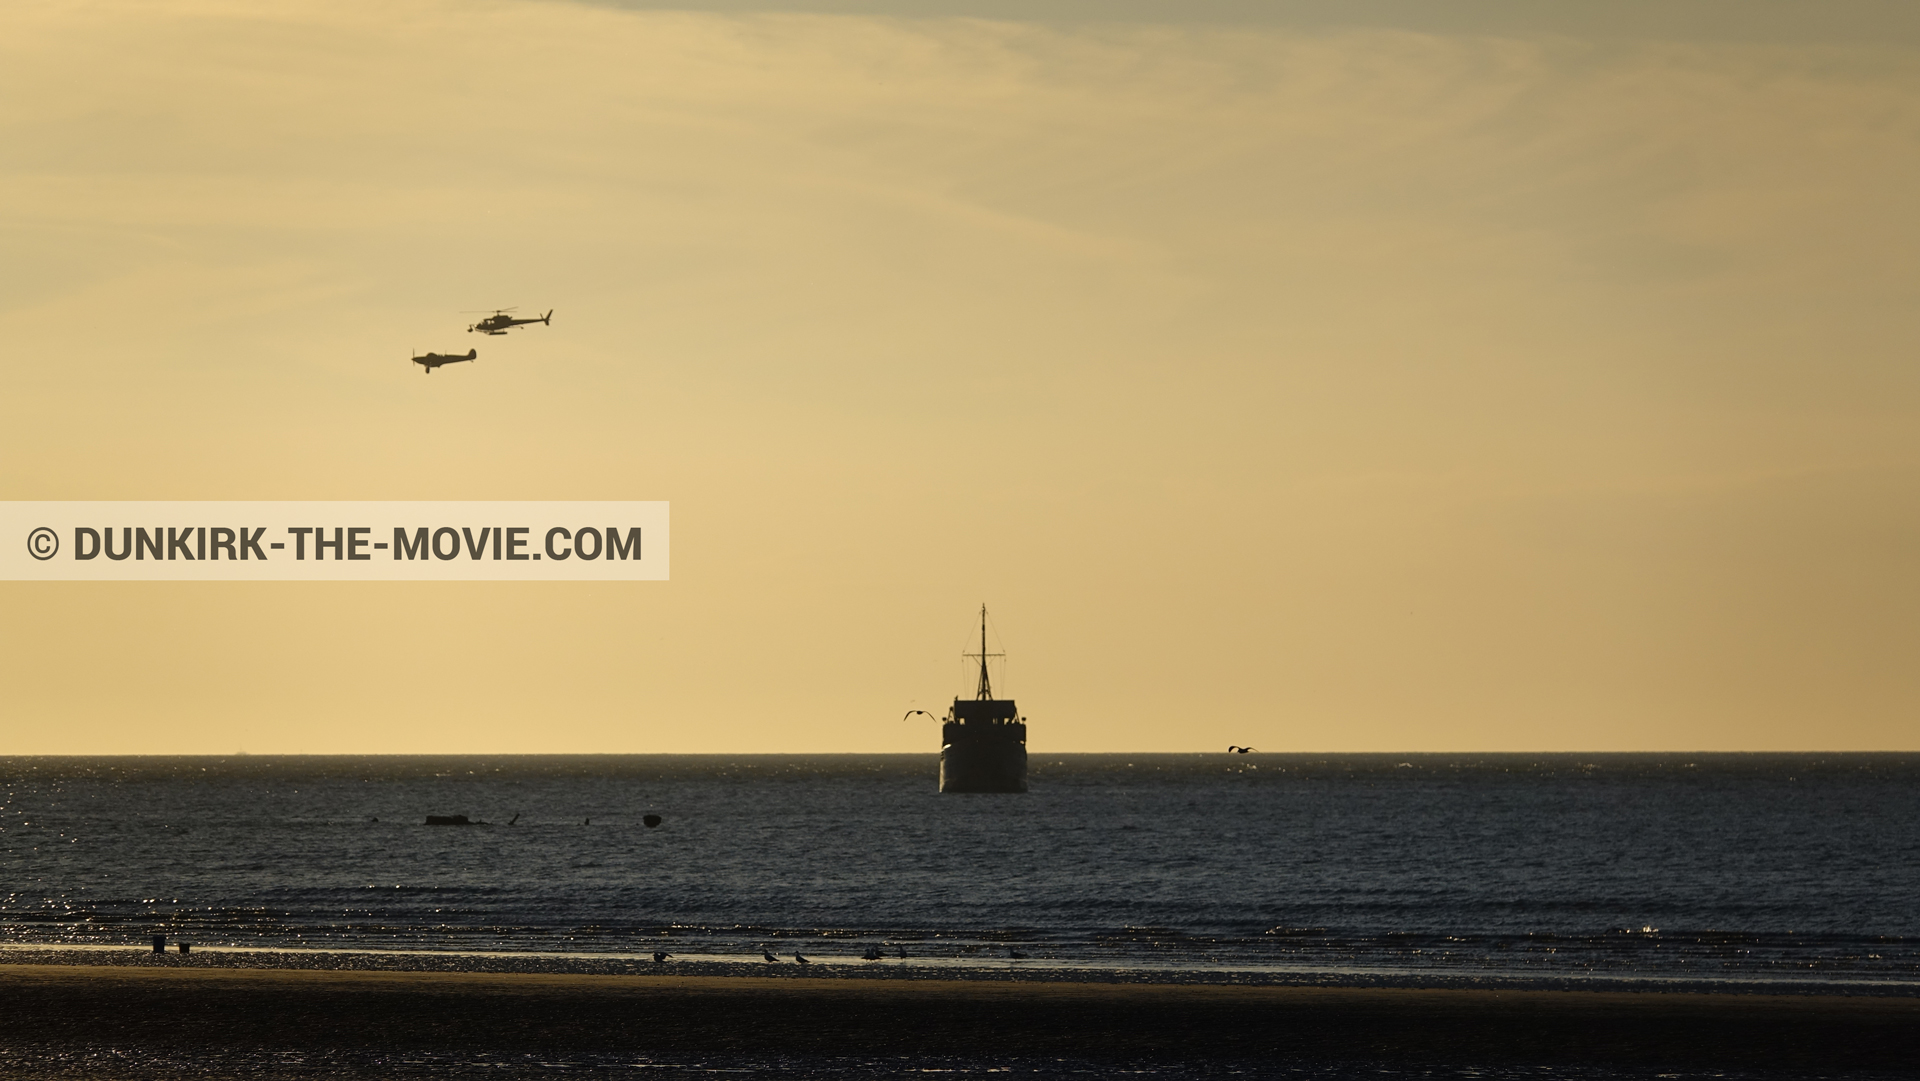 Fotos con avion, barco, cielo anaranjado, cámara helicóptero,  durante el rodaje de la película Dunkerque de Nolan